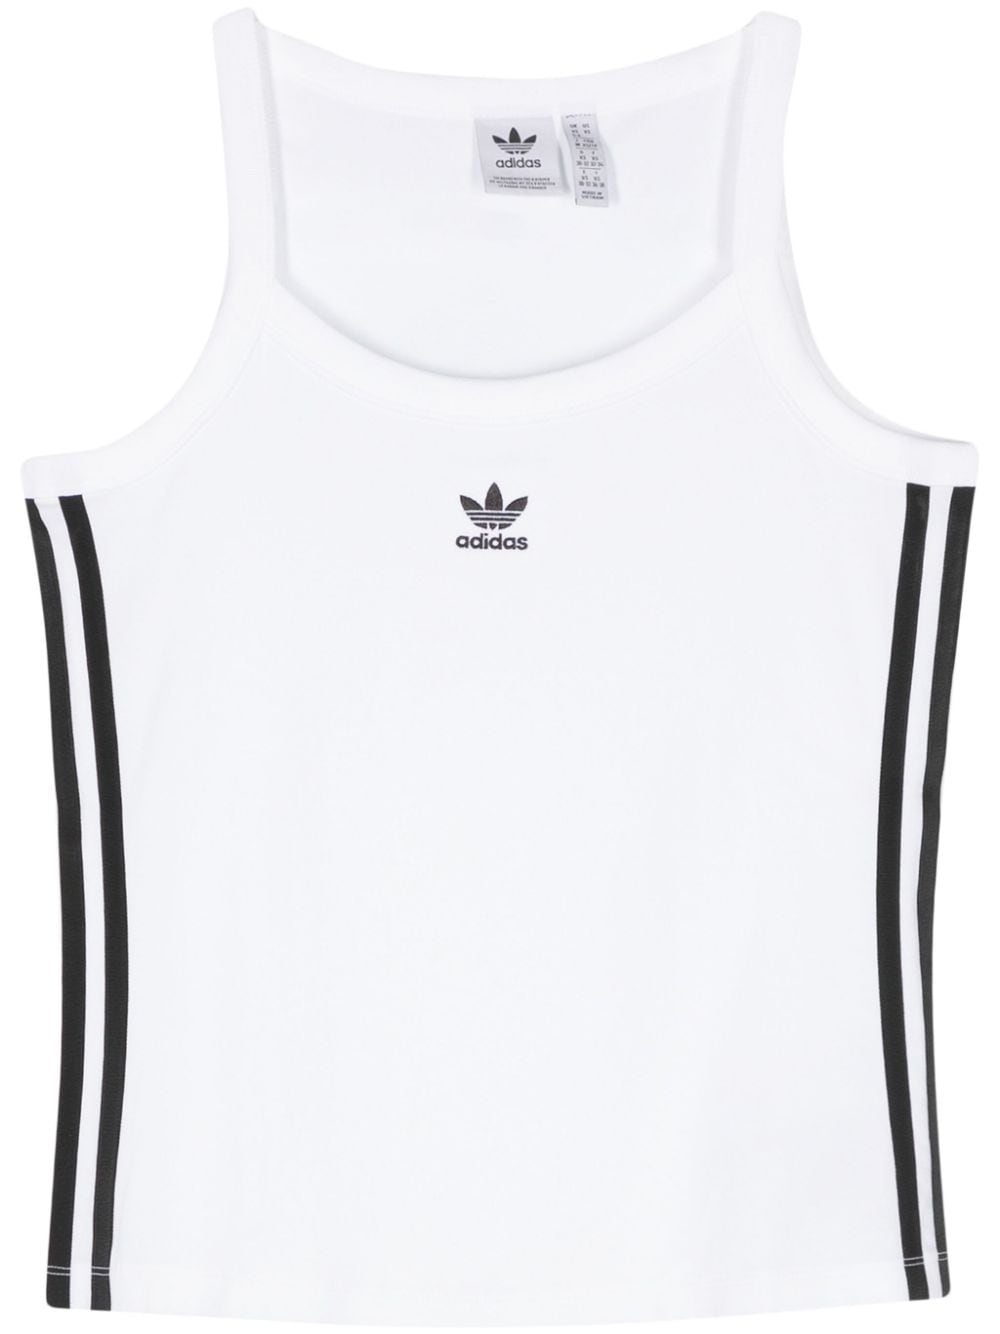 Adidas Originals 三条纹logo无袖上衣 In White